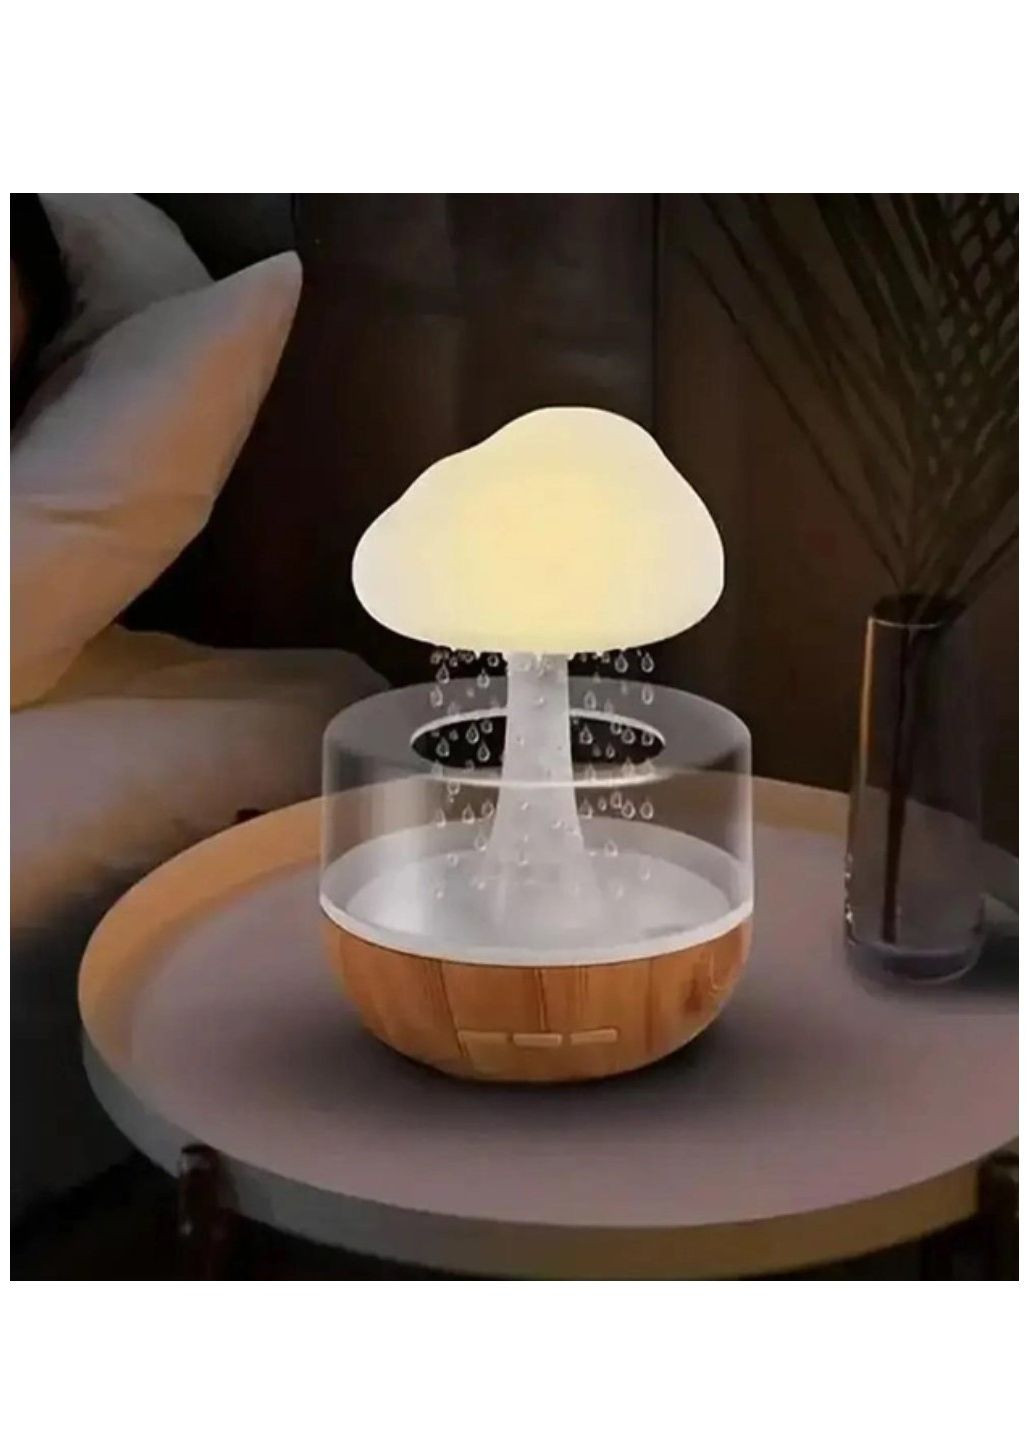 Увлажнитель воздуха ночник с эффектом дождя с подсветкой RGB в виде гриба Aroma (292144549)